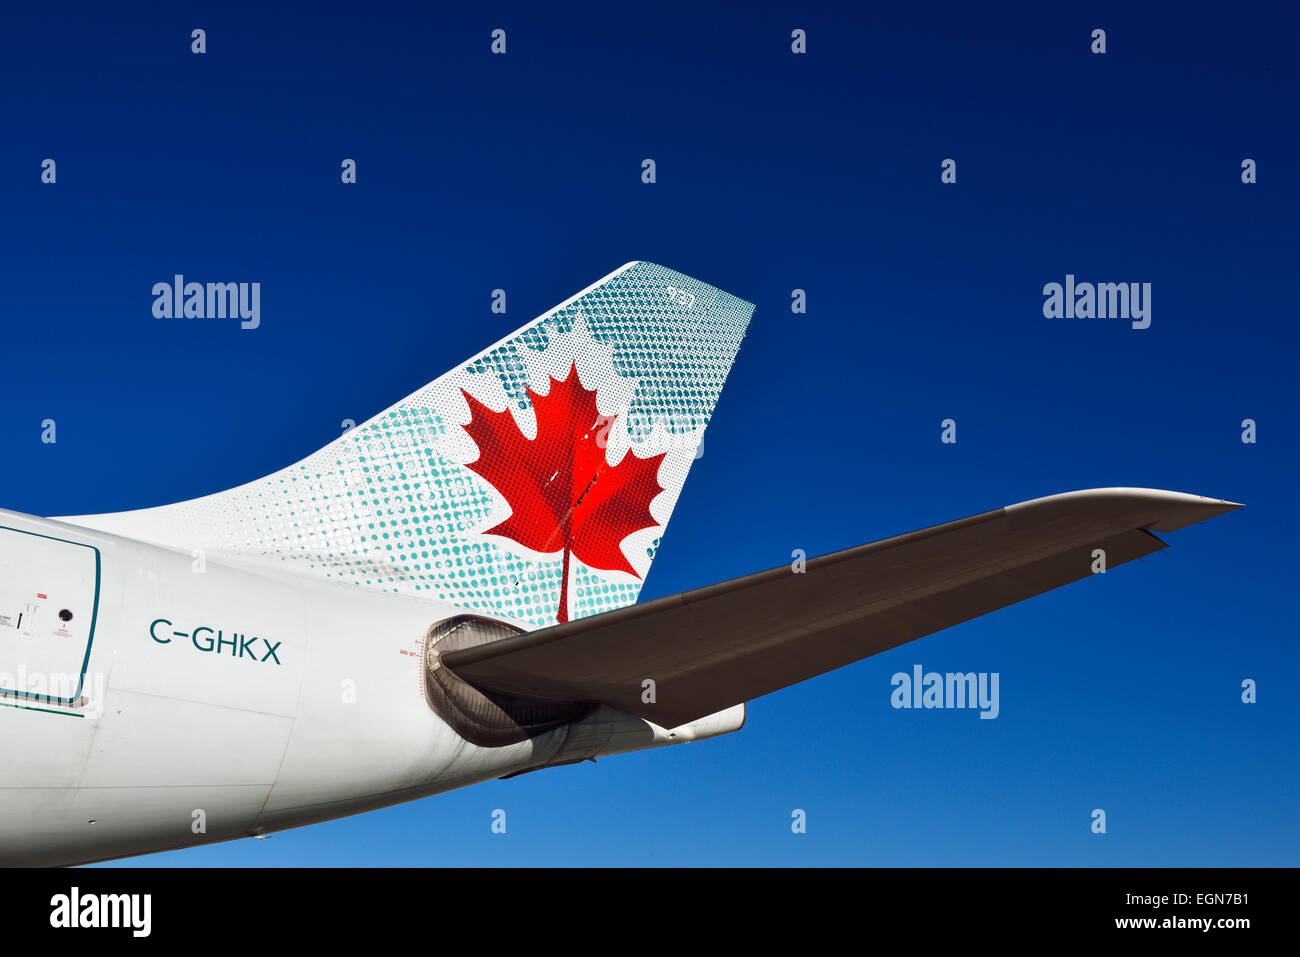 Air Canada, Airbus, aviones 330-200, avión, avión, ala winglet, estabilizador horizontal, sol, cielo azul, tráfico, Foto de stock